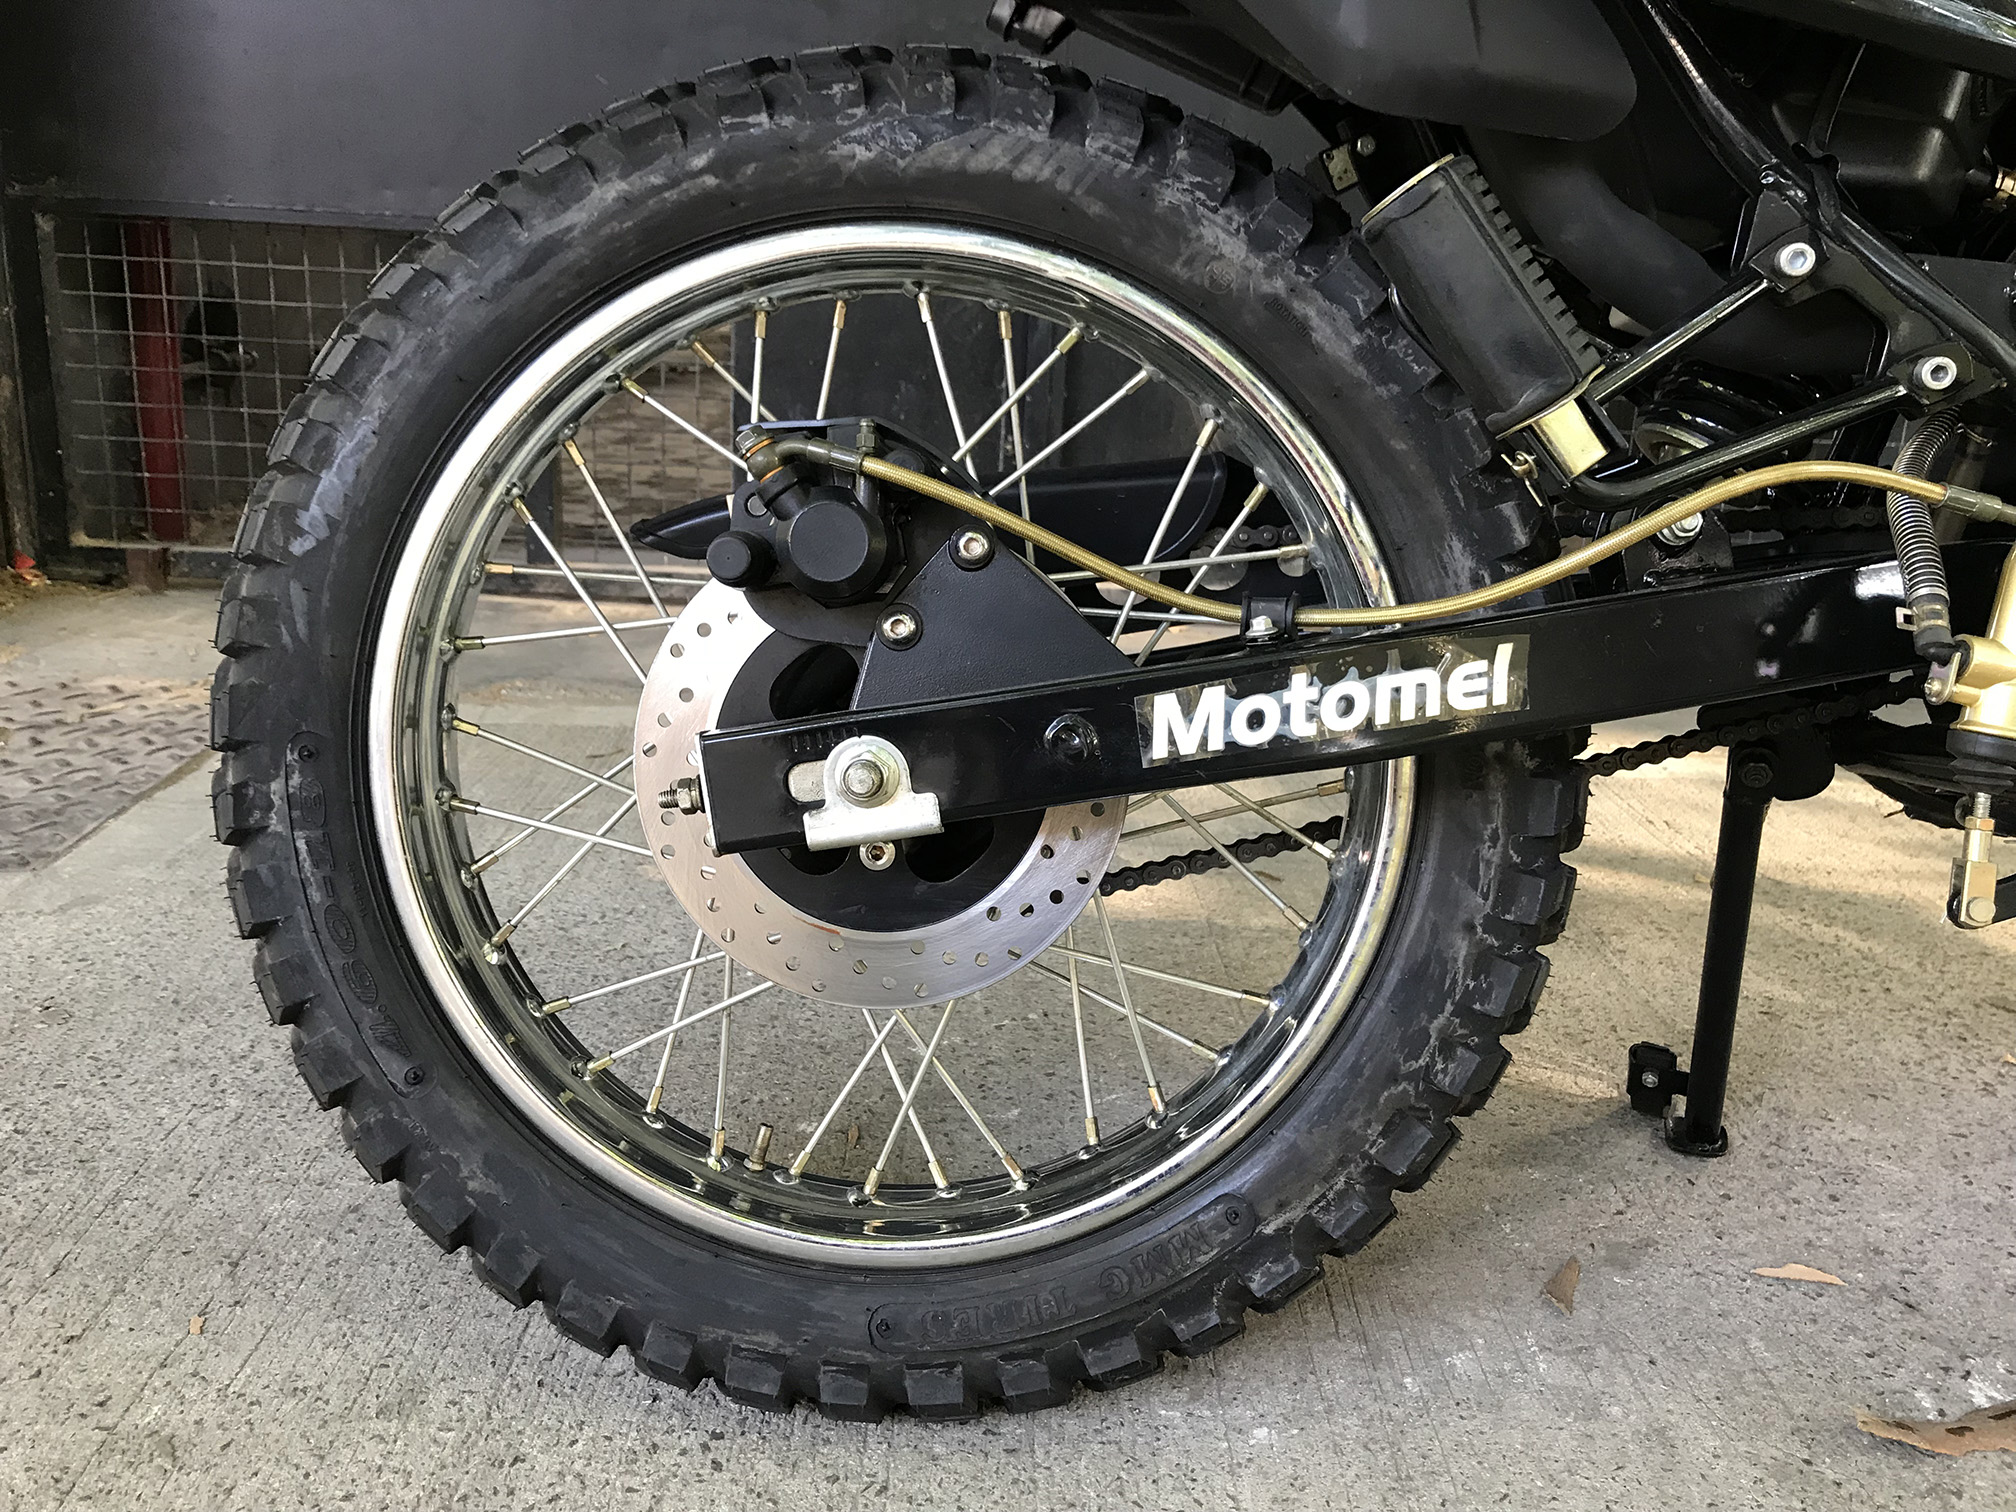 Moto Motomel skua 250 base linea 2014